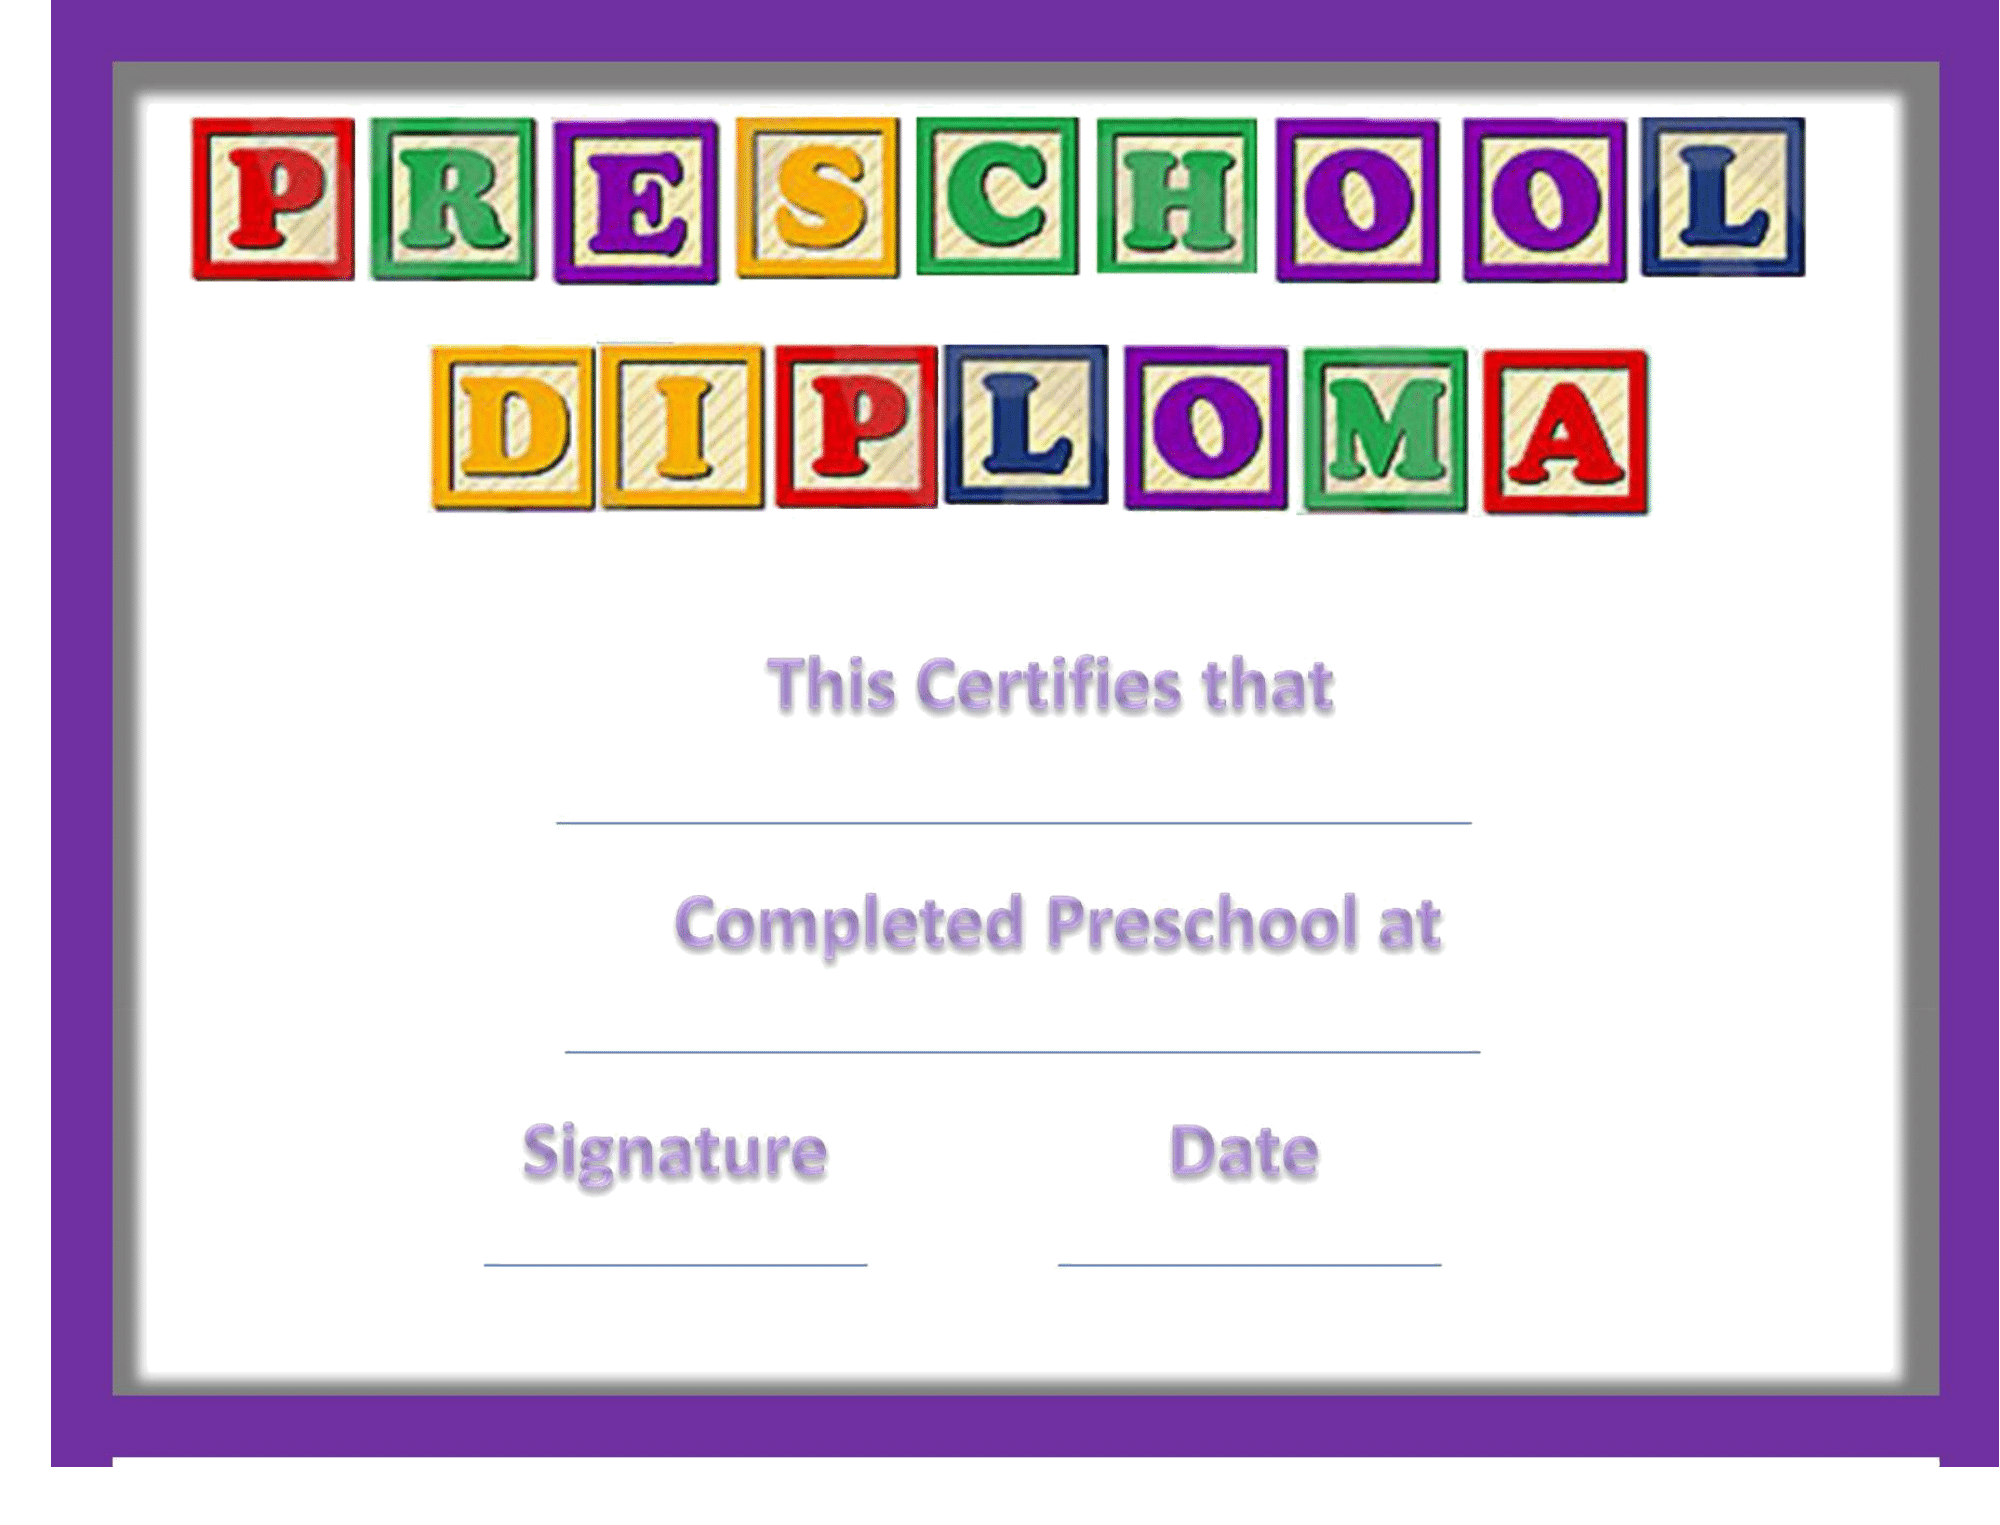 Preschool Diploma Certificate – FREE Download